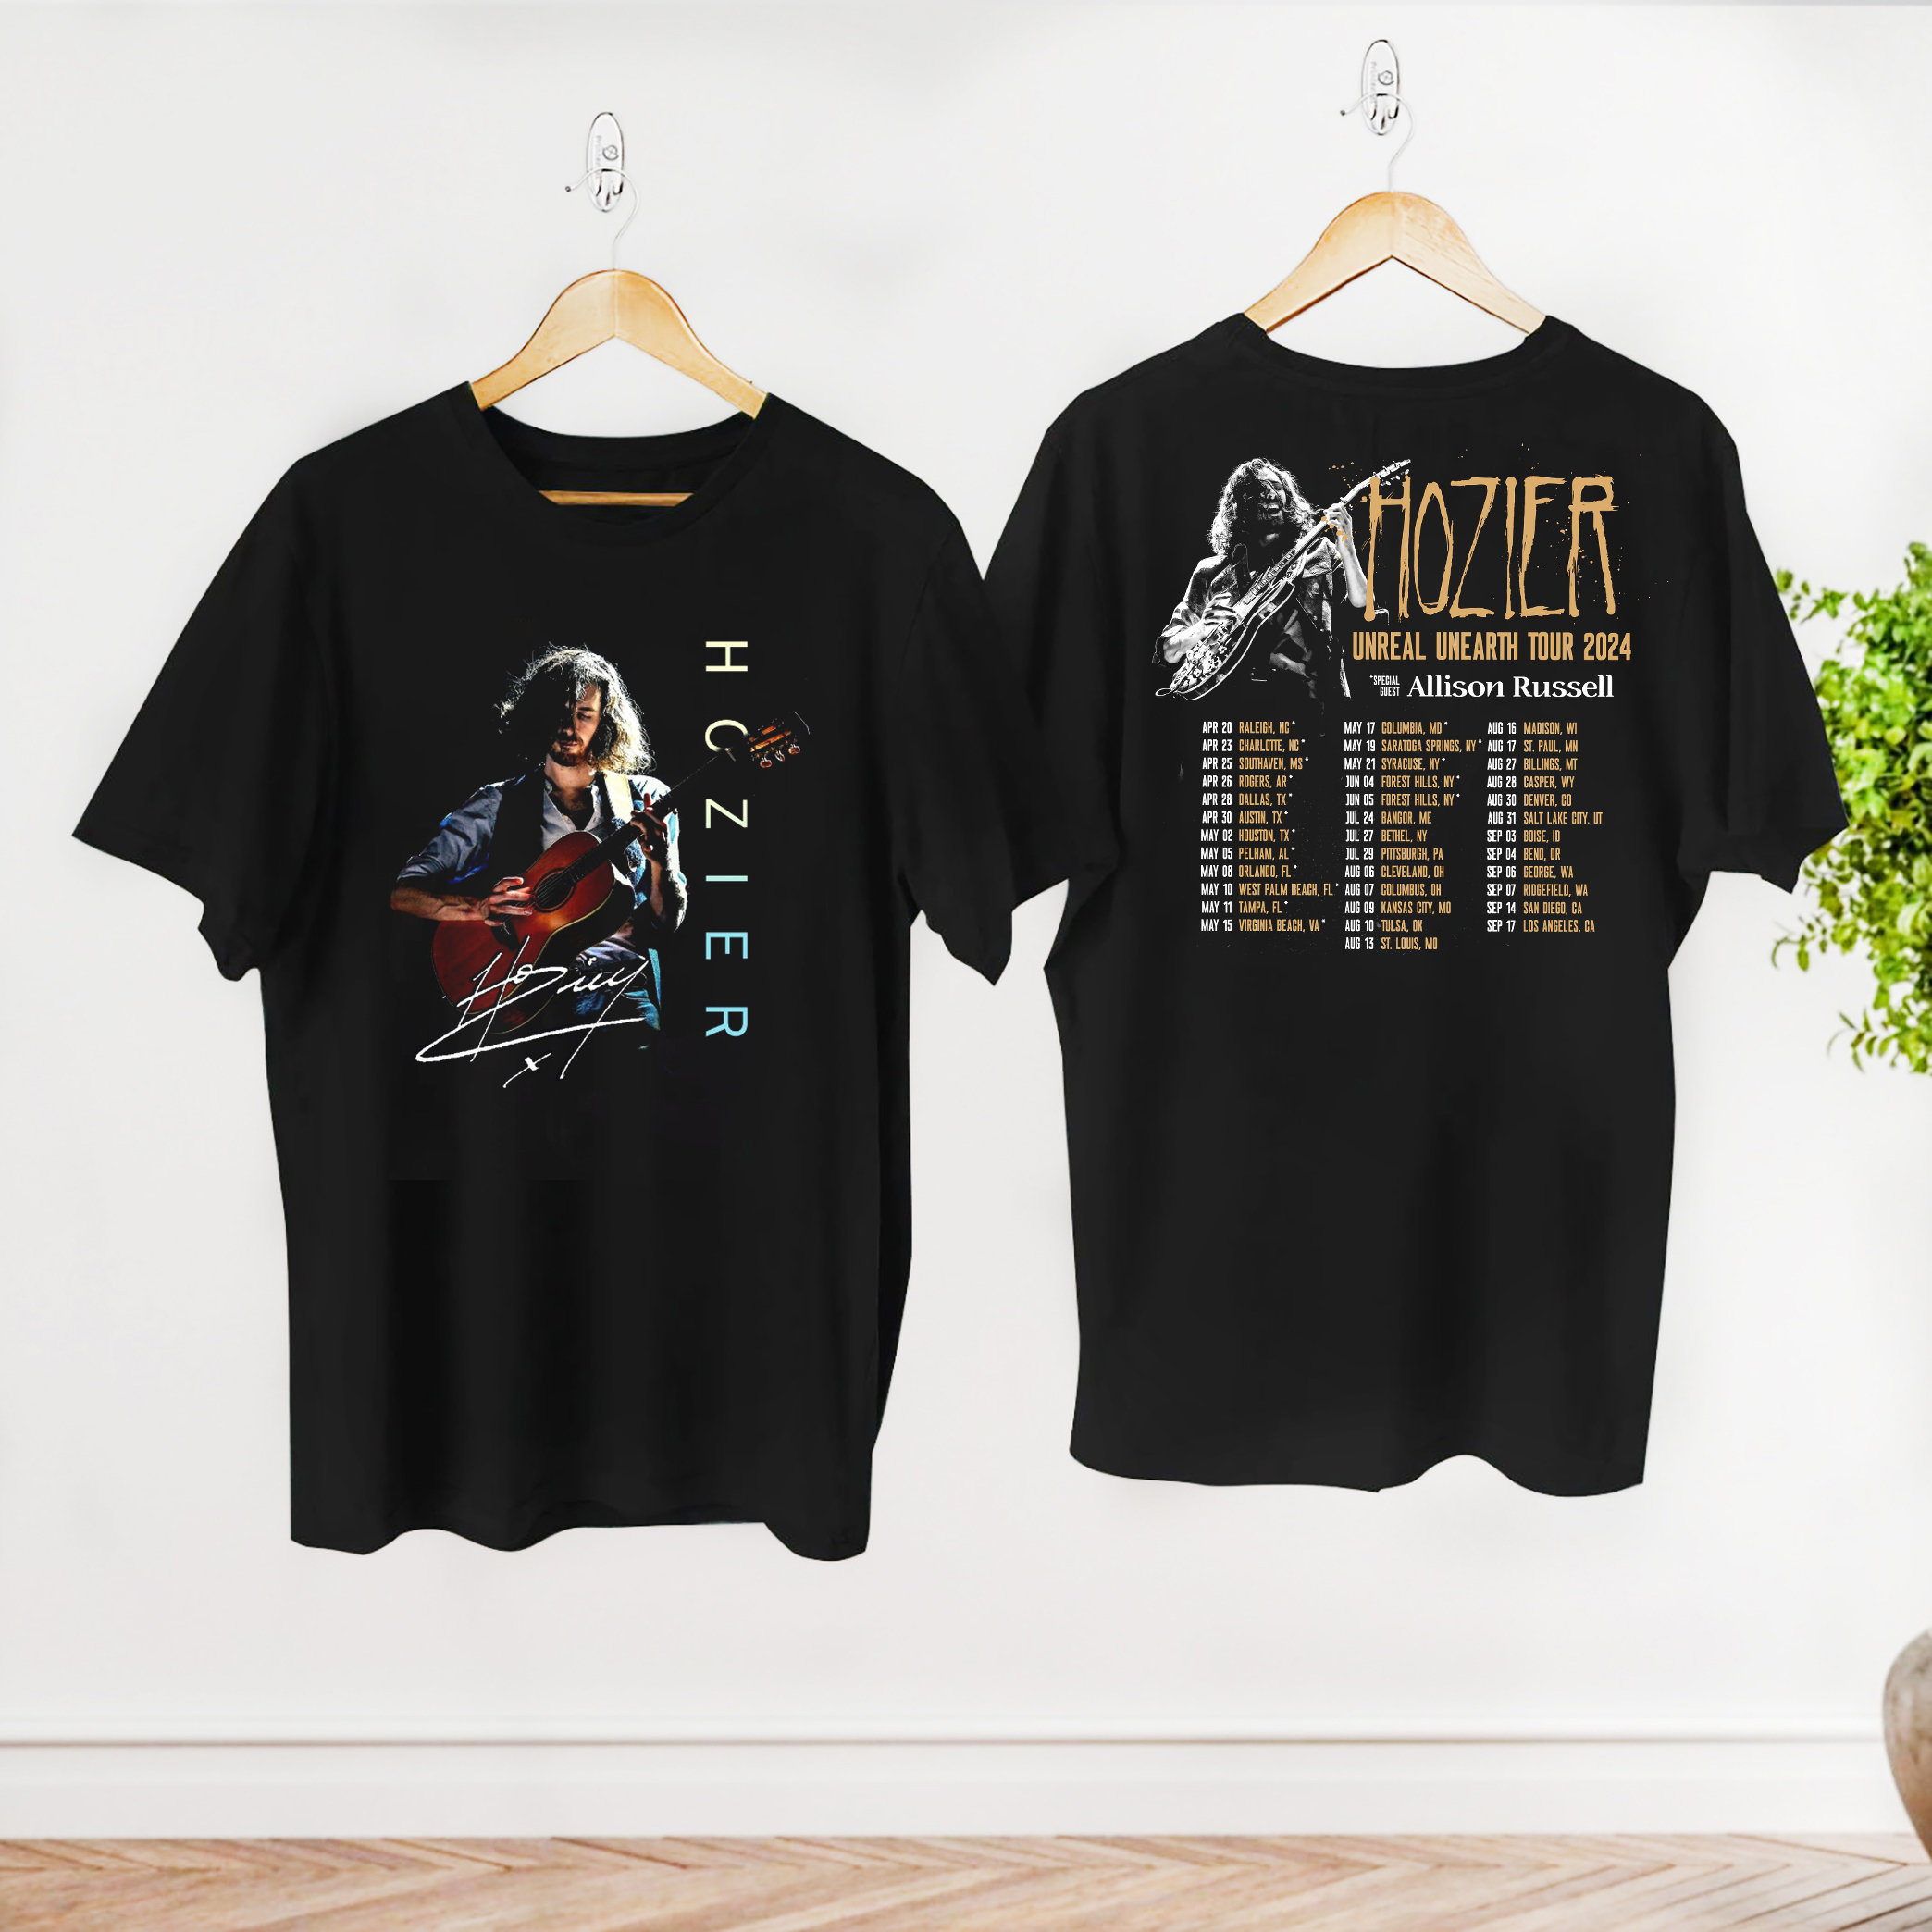 Hozier Unreal Unearth Tour 2024 Shirt, Premium Shirt, Fan Shirt, Tour Shirt